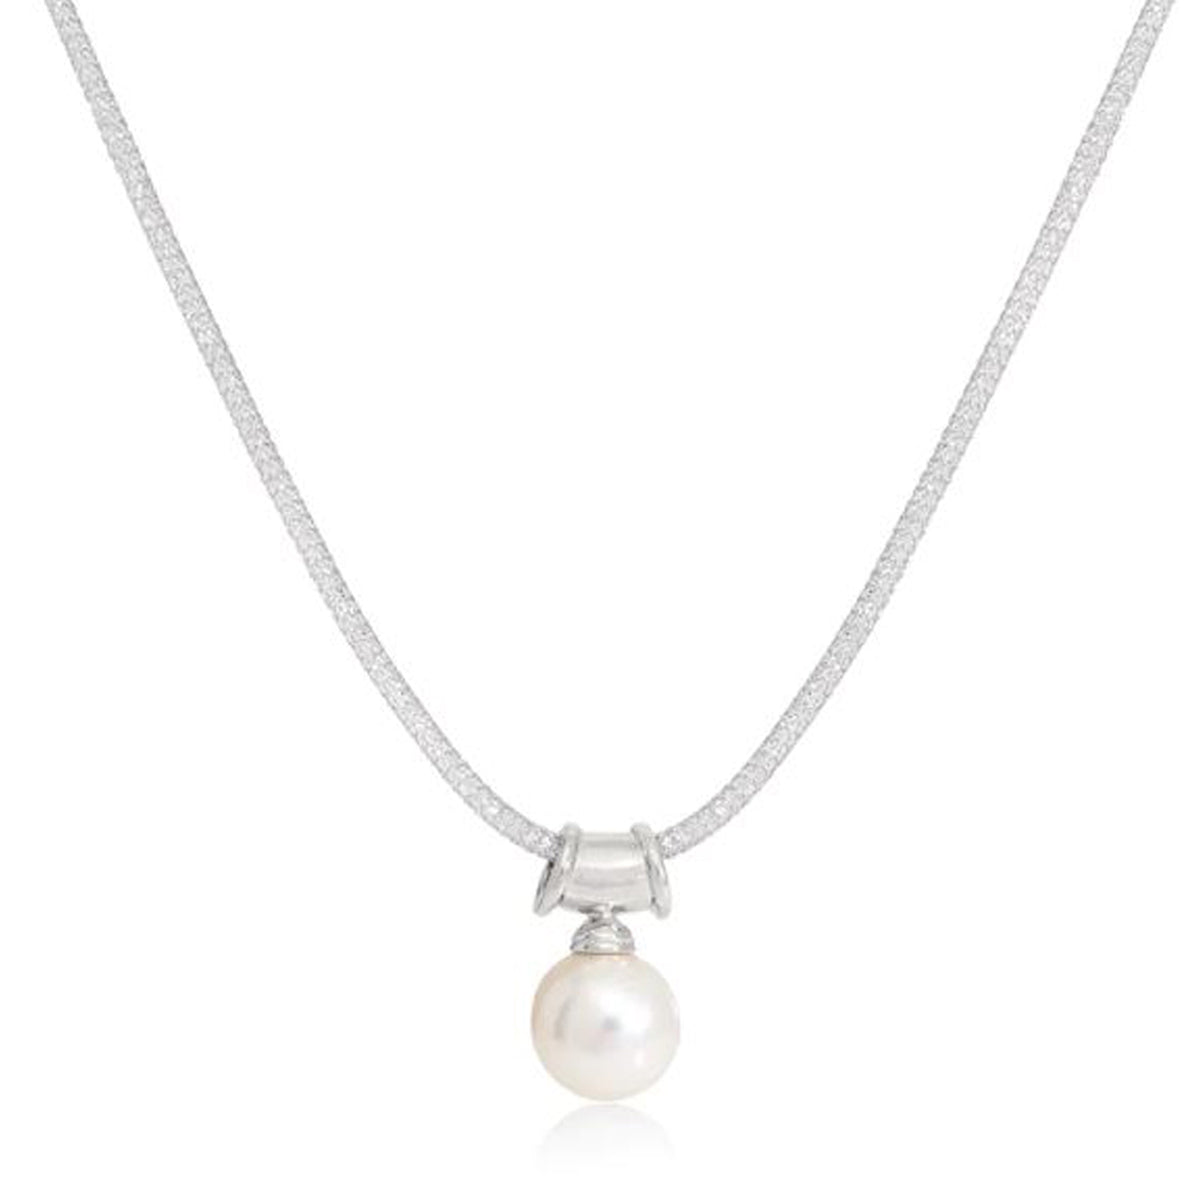 SALE Chunky Link Necklace – Jennifer Miller Jewelry